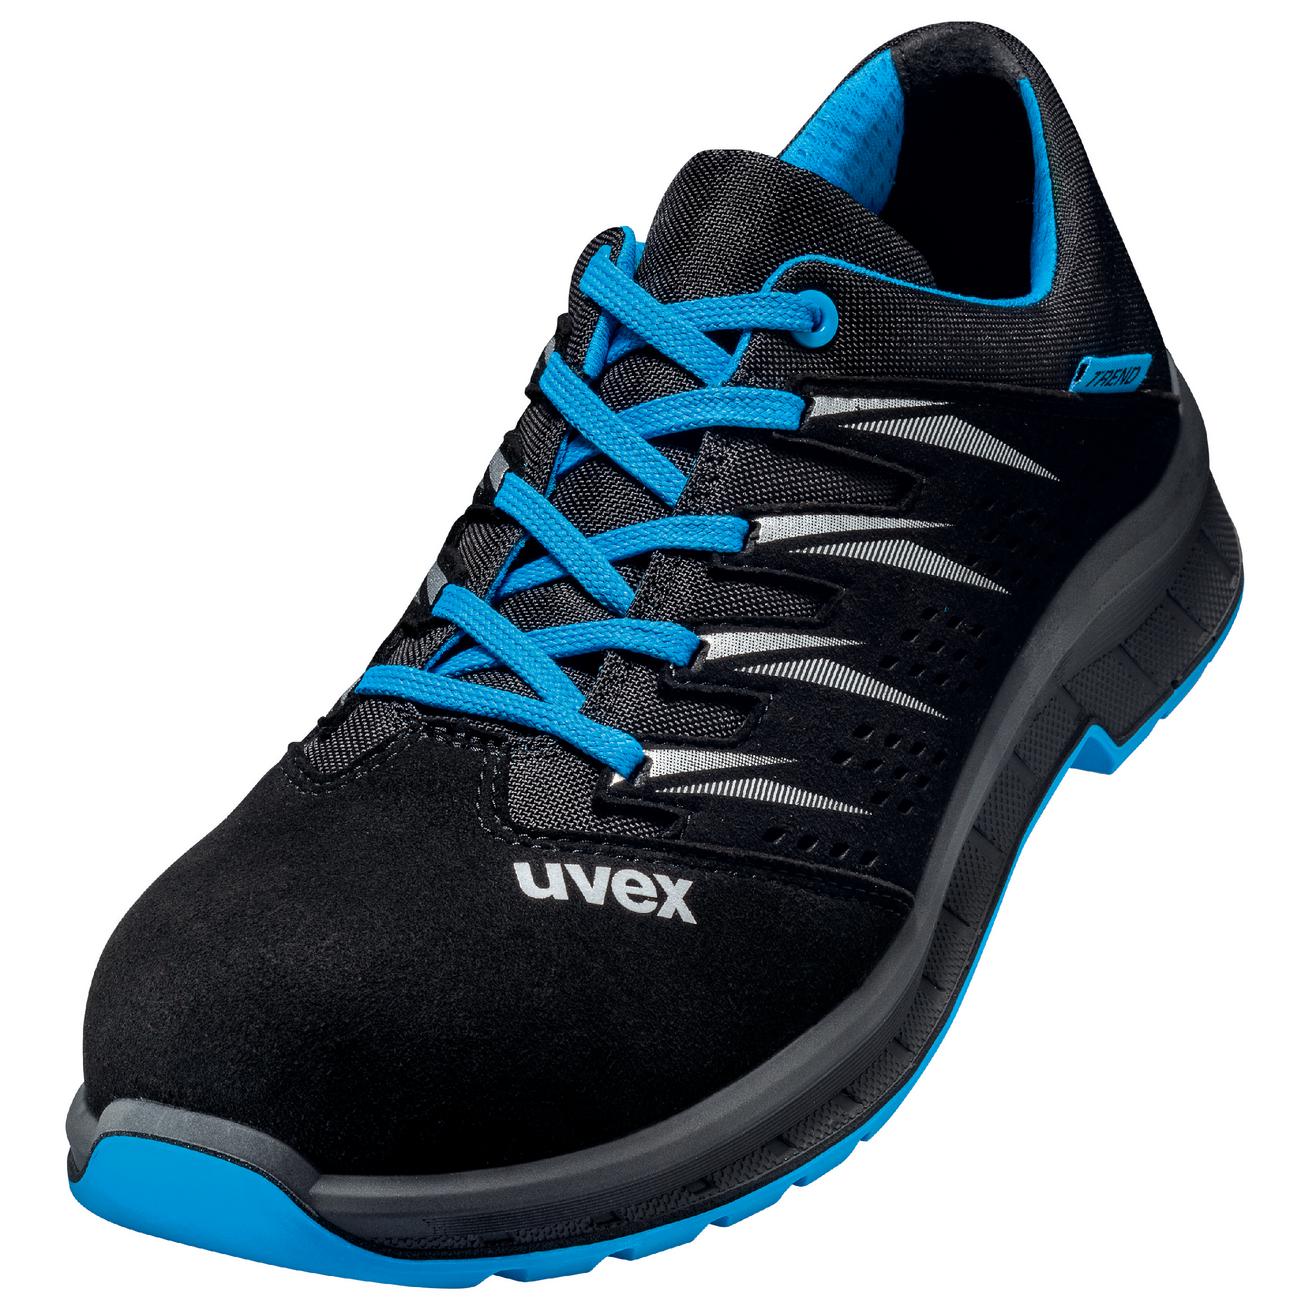 Perf. polobotka obuv uvex 2 trend, šíře 11, S1 SRC, černá/modrá 6937 Velikost: 41, Kód produktu: 6937841